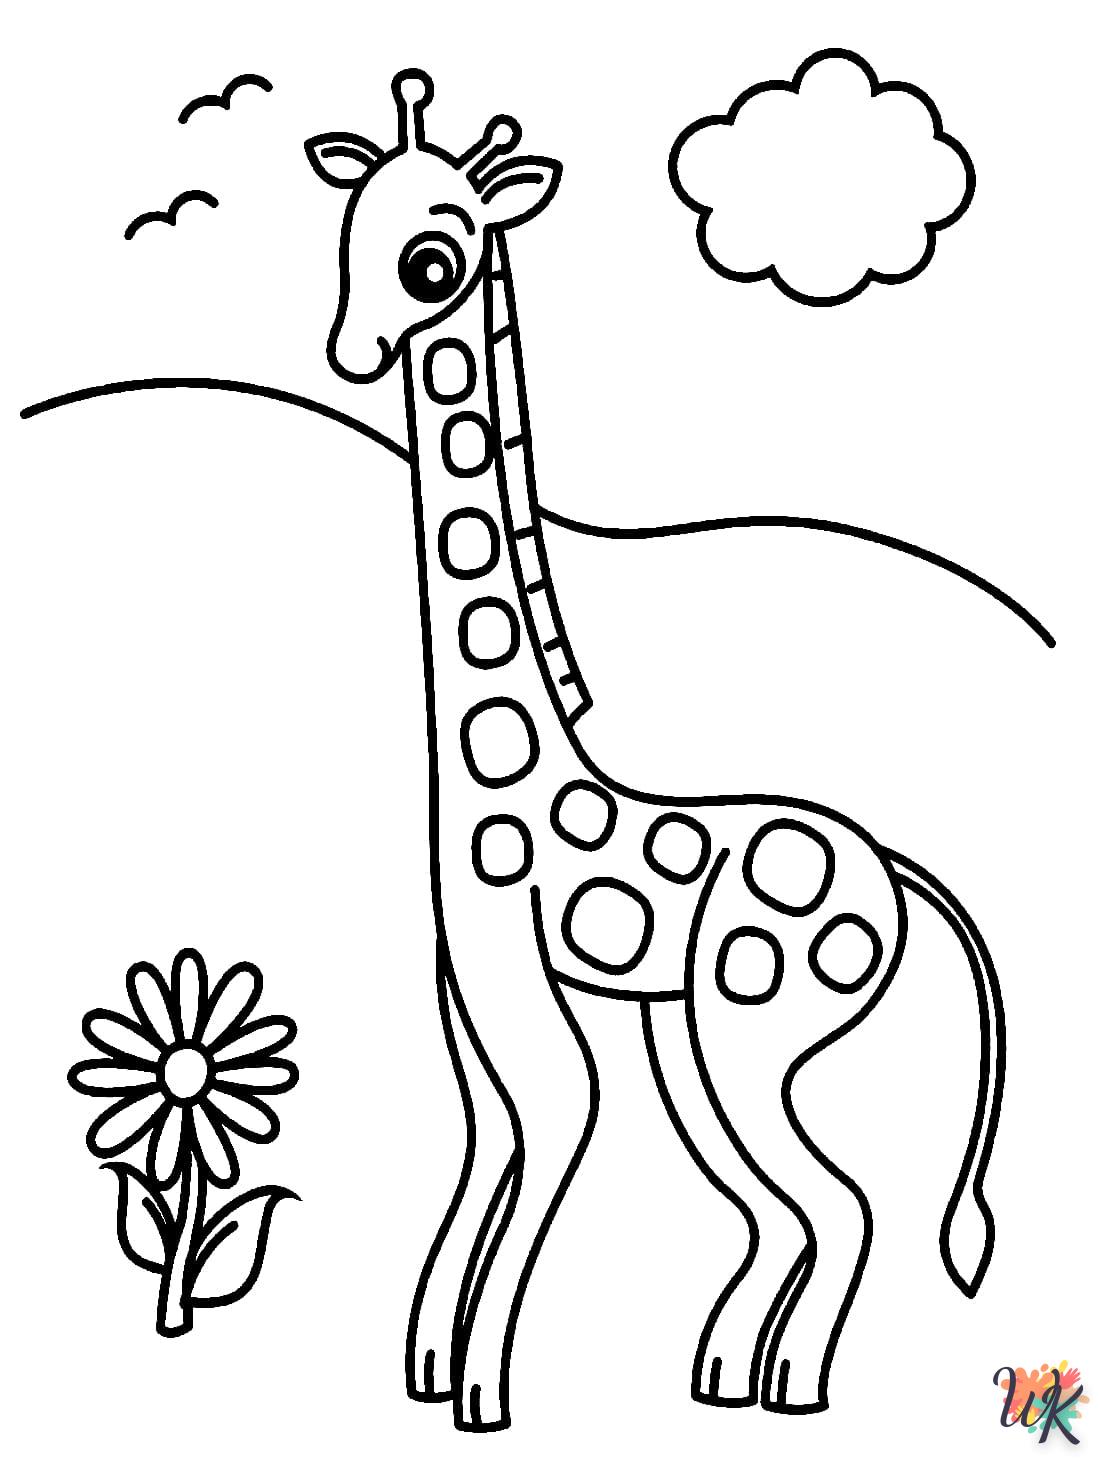 Giraffe kleurplaten25